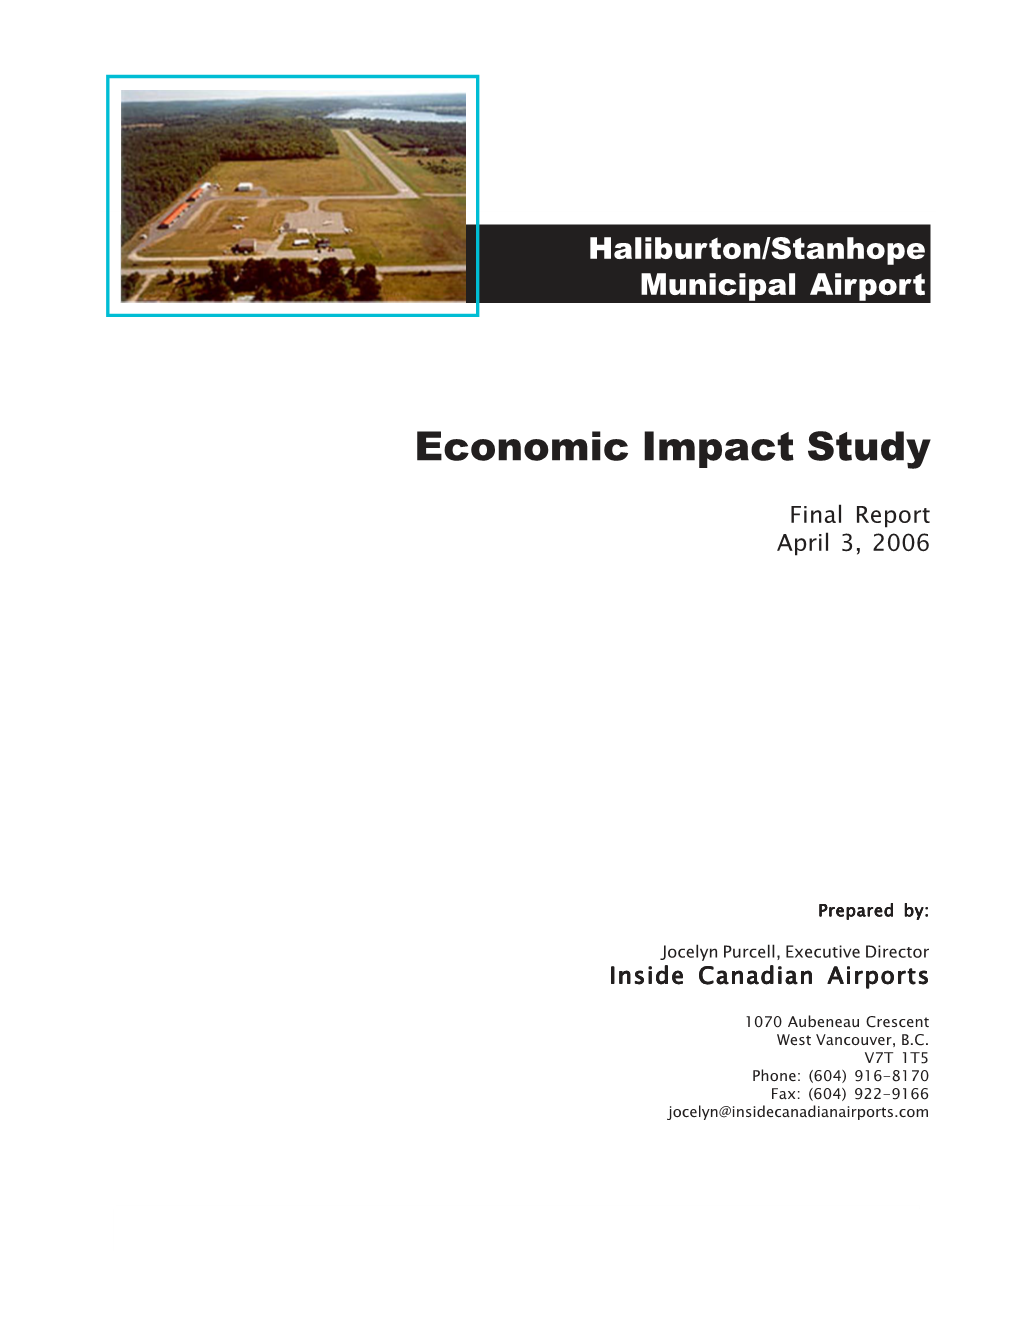 Haliburton Stanhope Municipal Airport Economic Impact Study